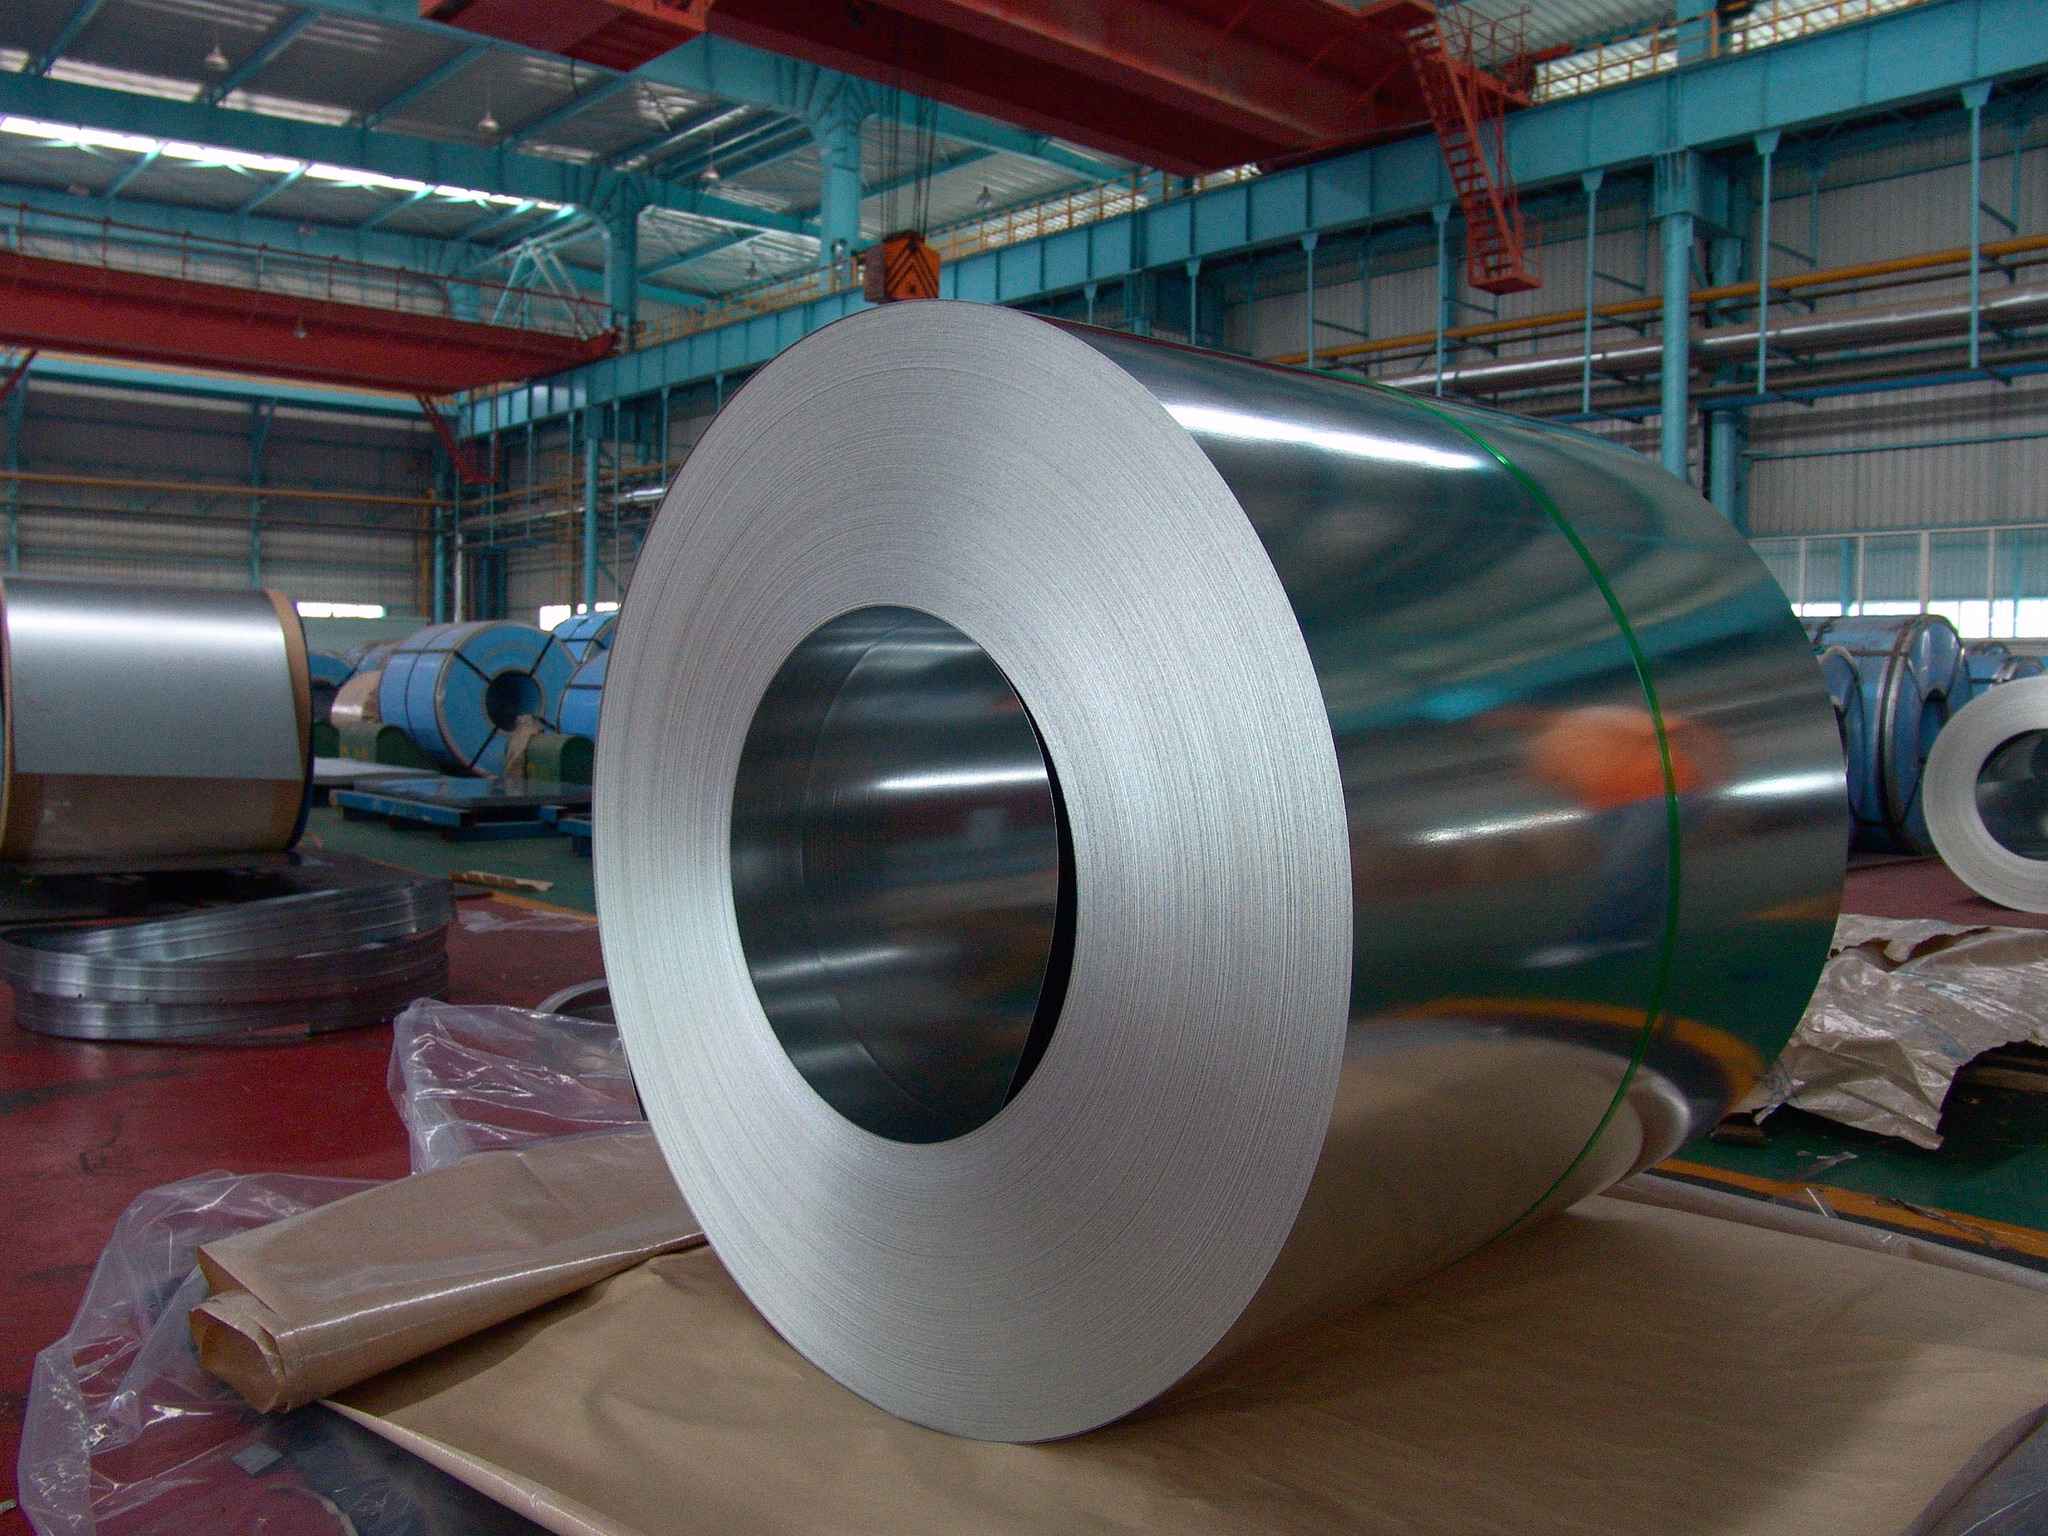 Китайская холоднокатаная оцинкованная сталь по хорошей цене в рулонах